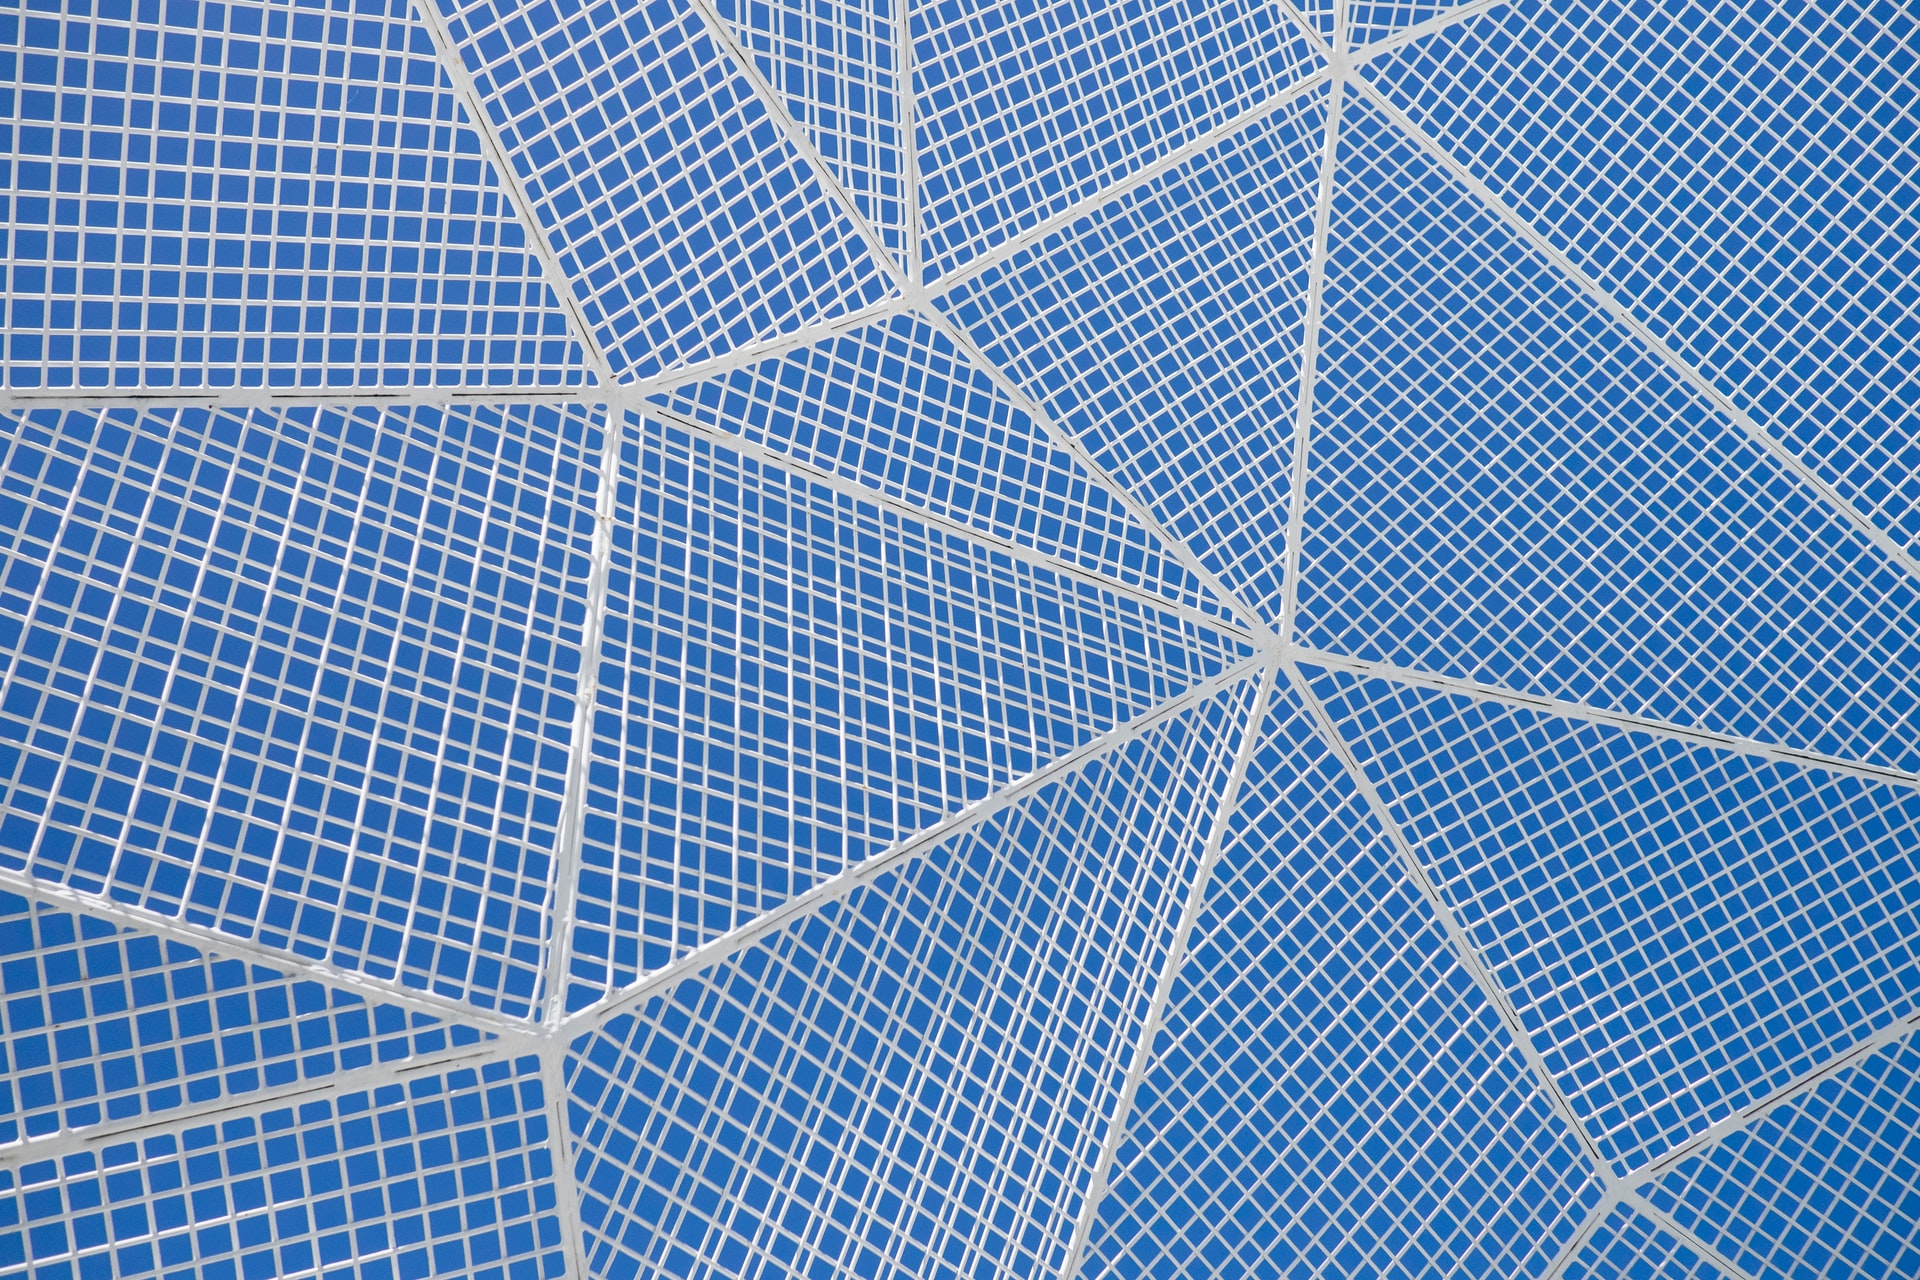 Vue aérienne de panneaux photovoltaïques